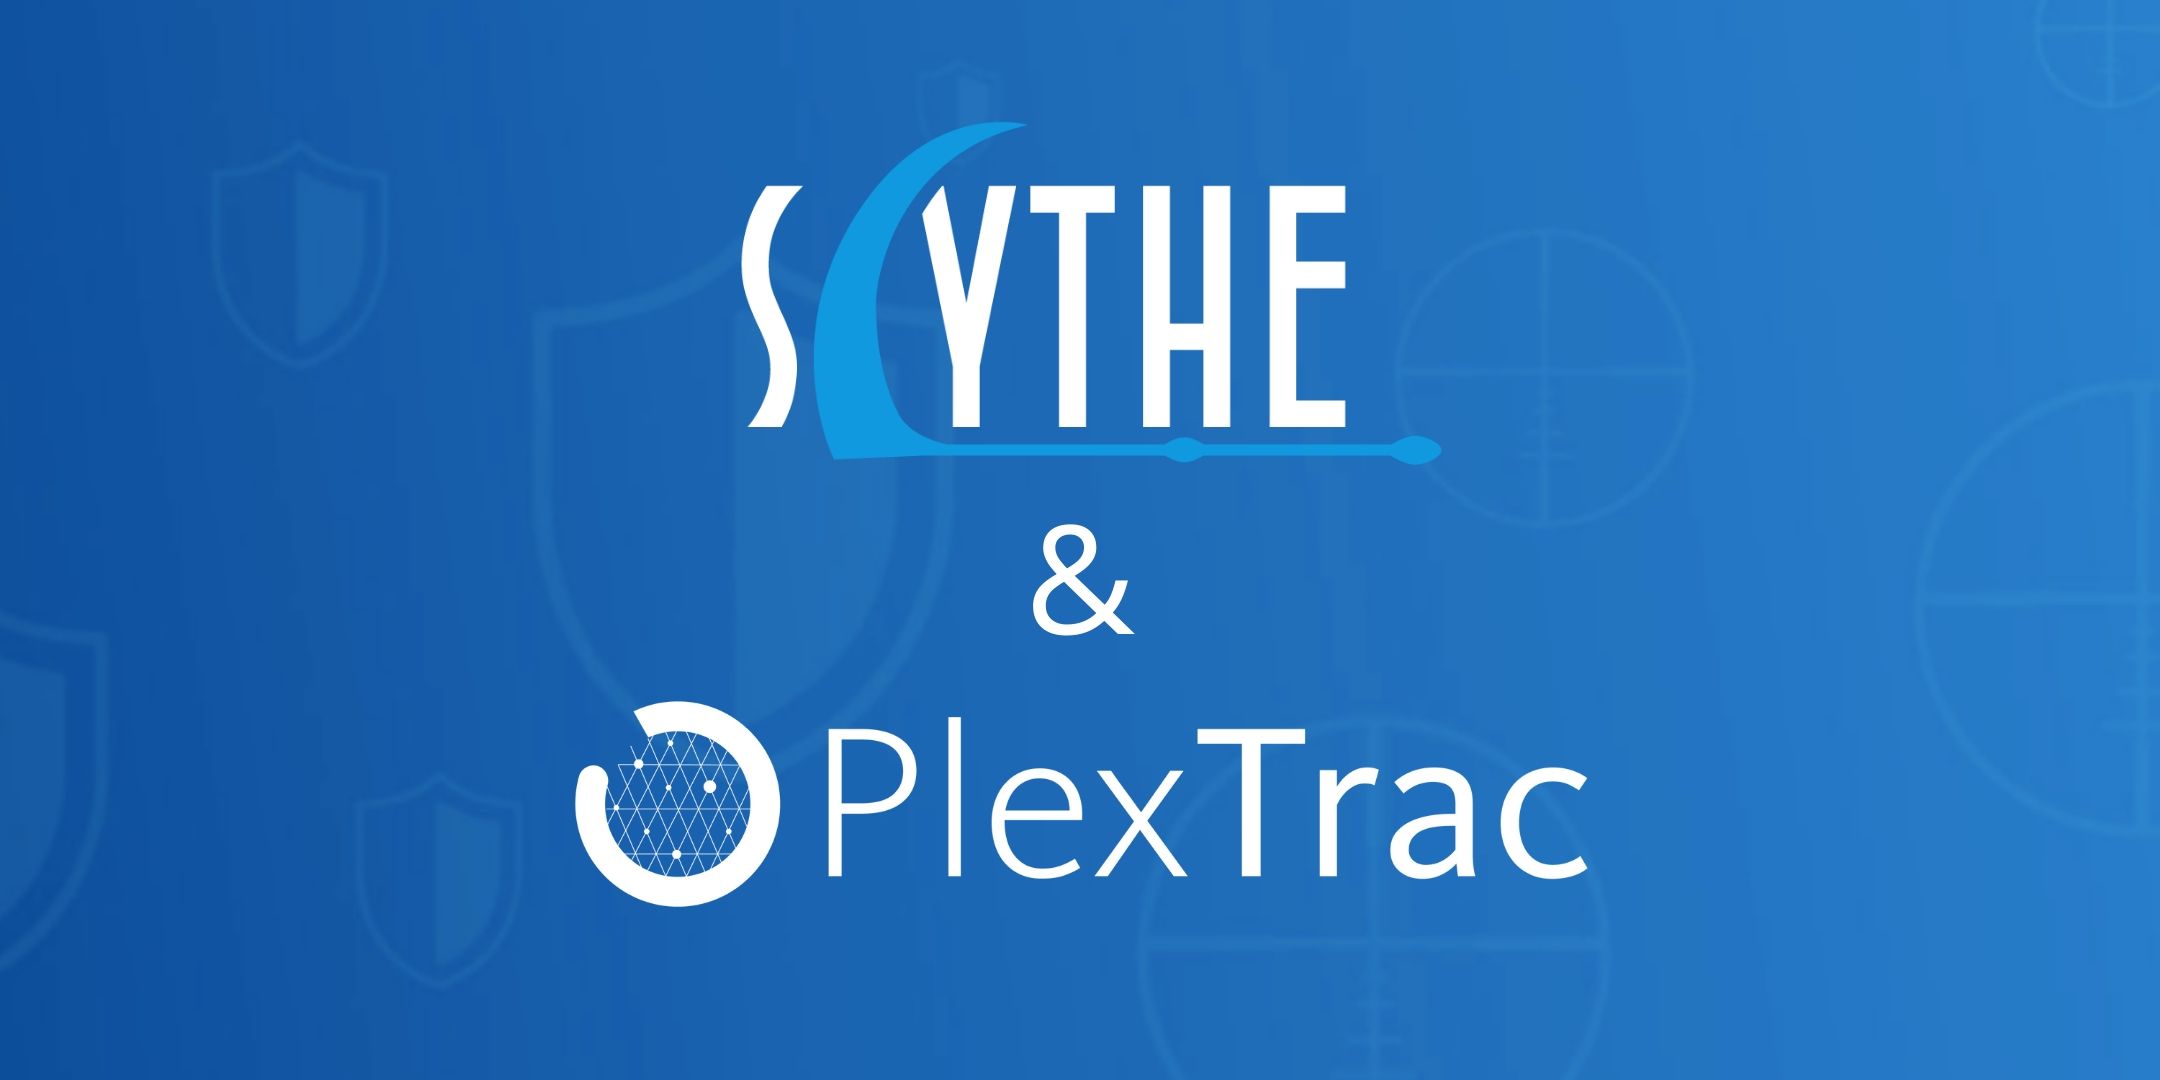 SCYTHE & PlexTrac Present: Dealin' With The Data